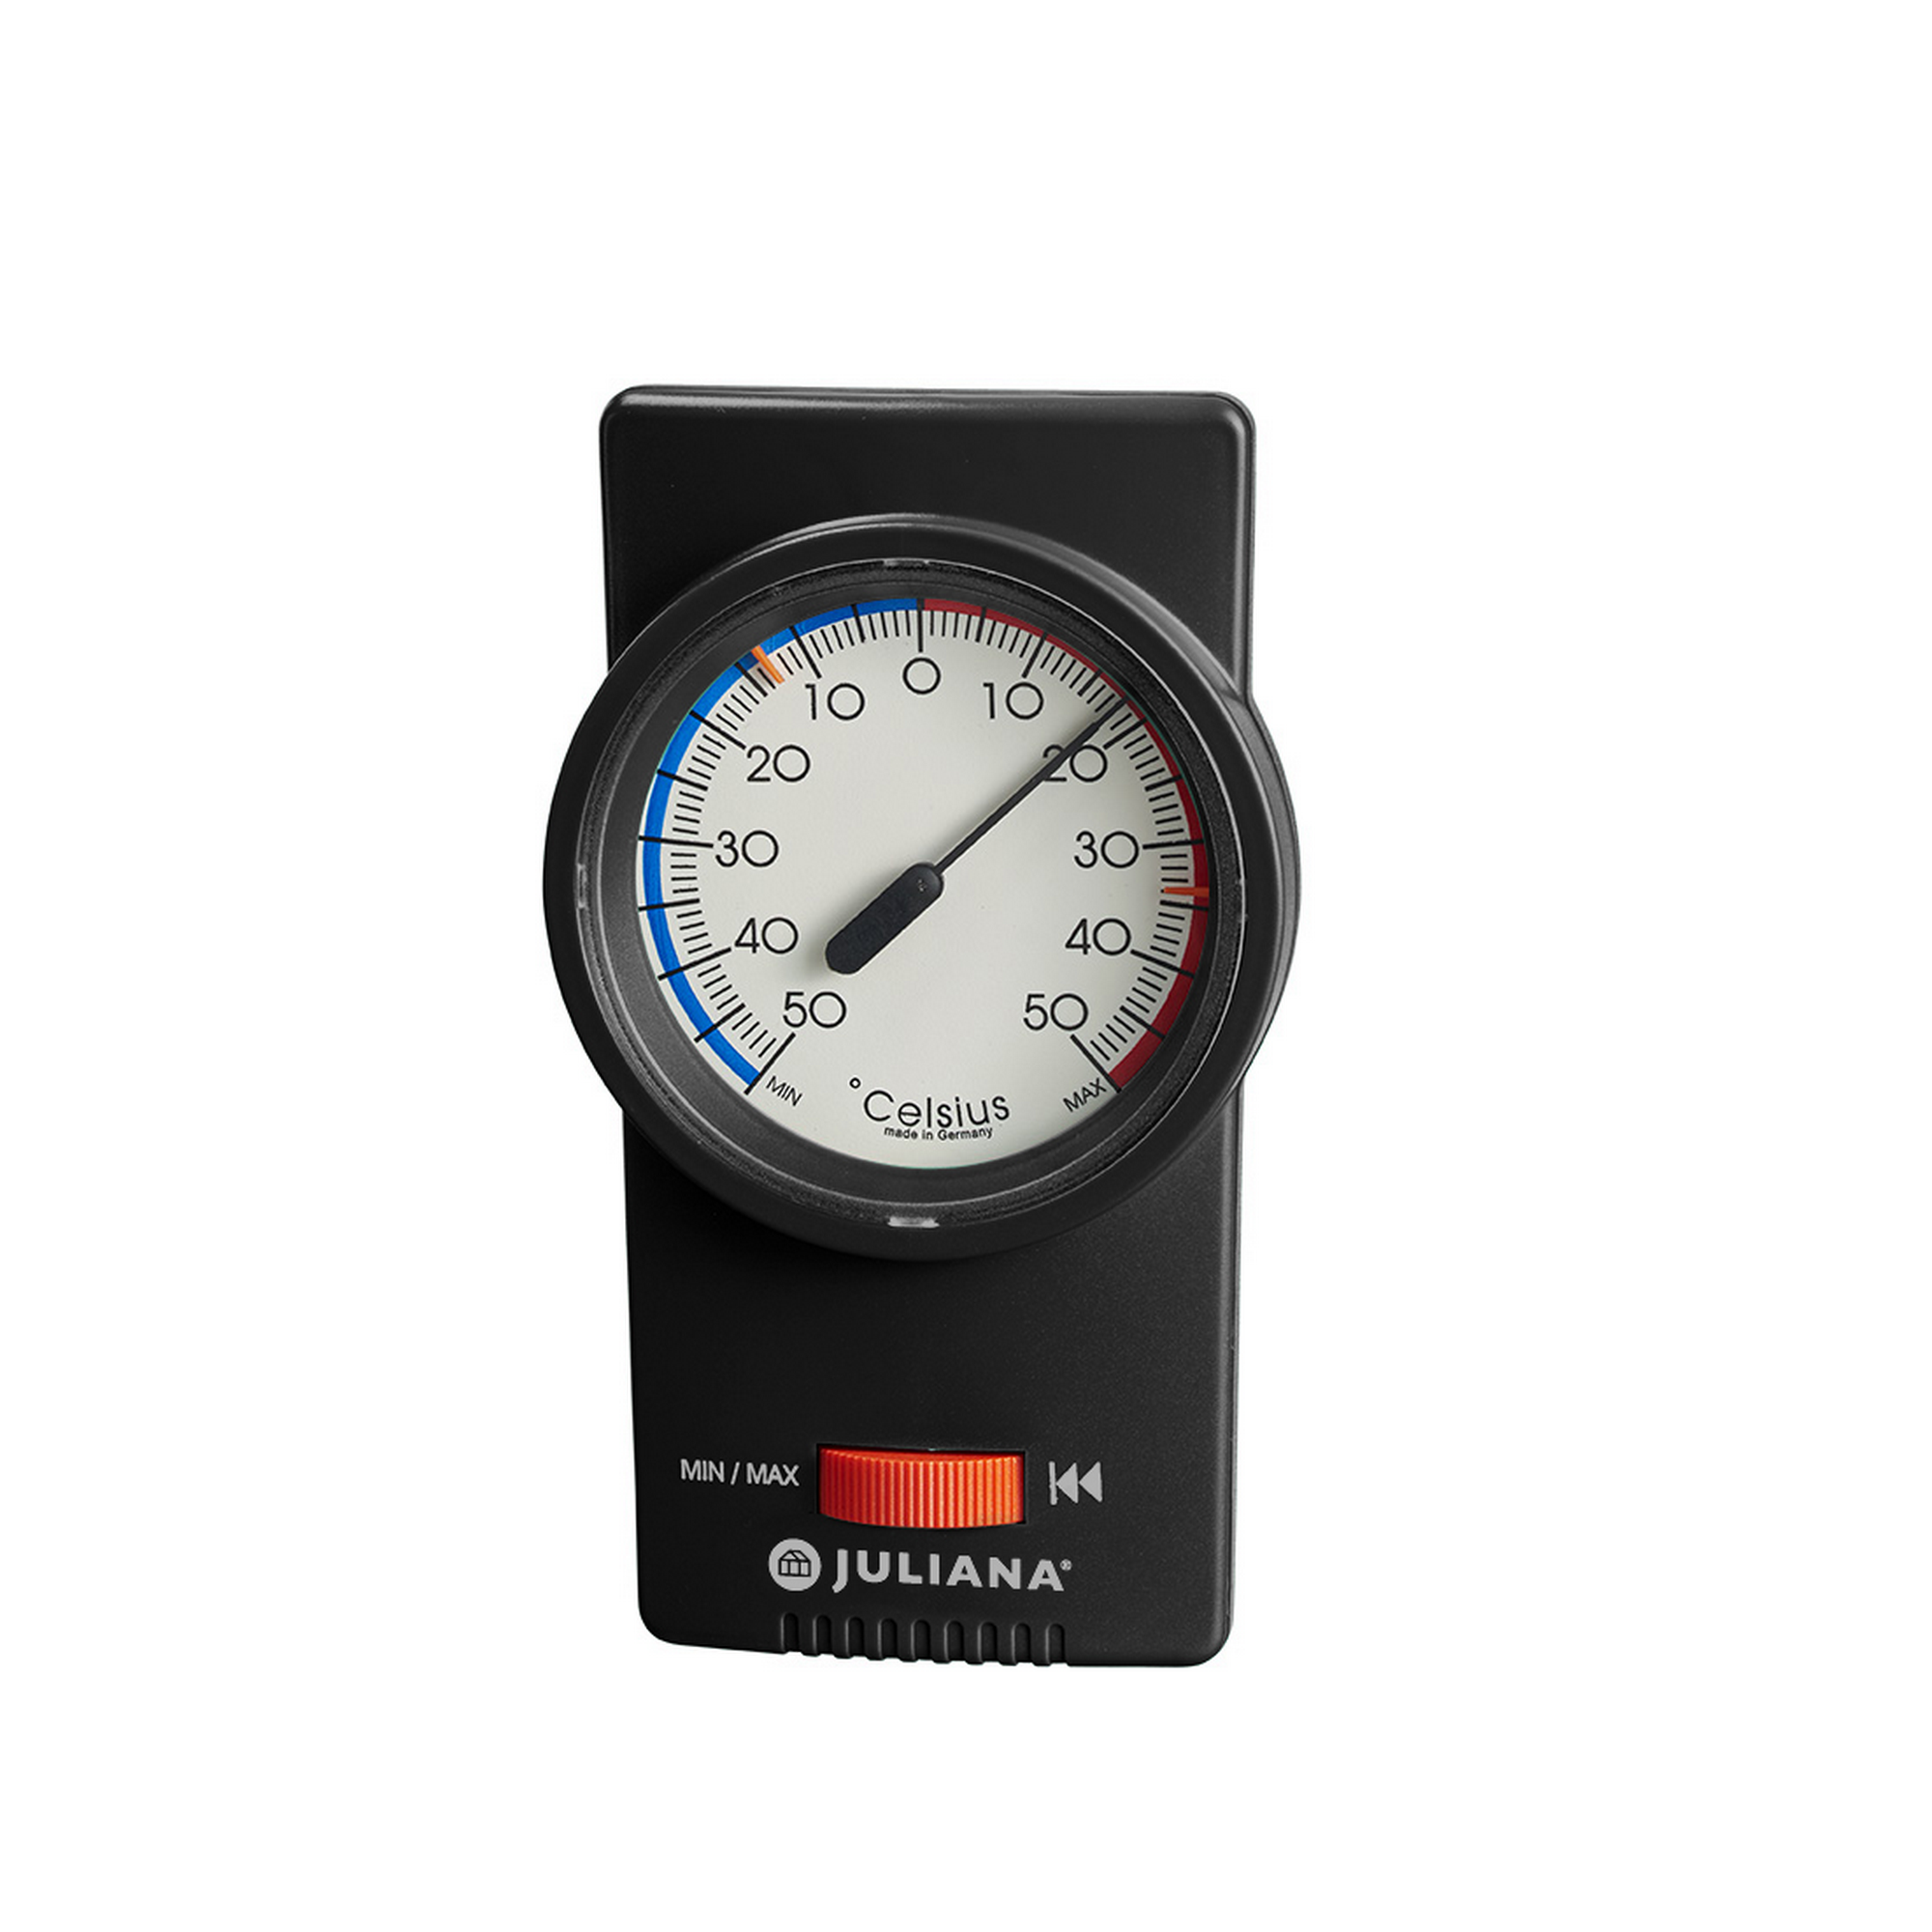 Min-Max-Thermometer für Gewächshäuser, analog, schwarz + product picture